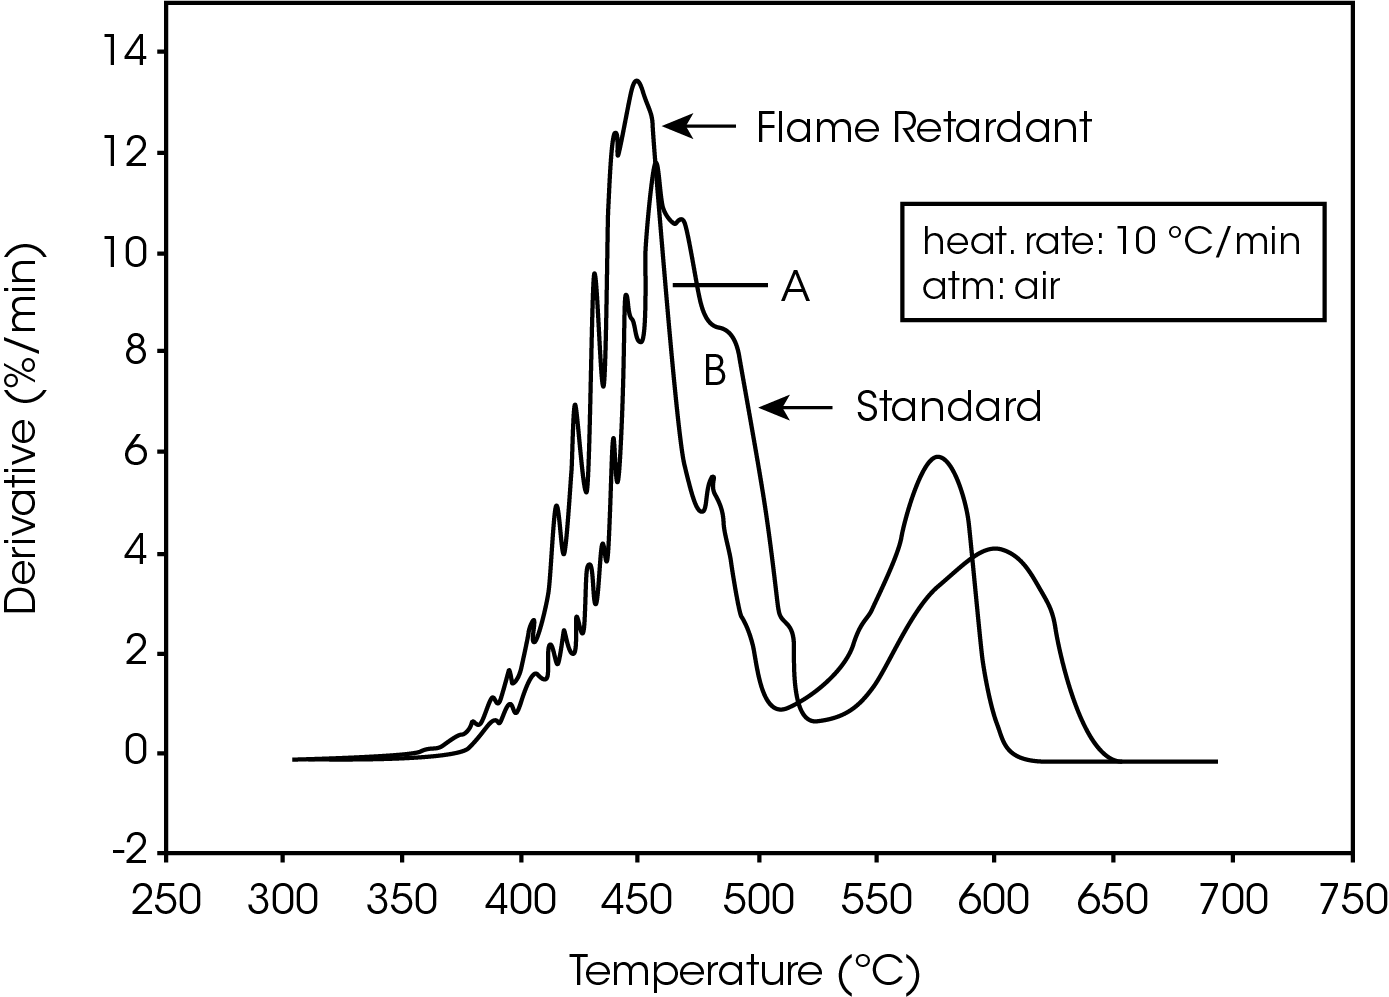 Figure 2. TGA Derivatives of Polycarbonate Decomposition